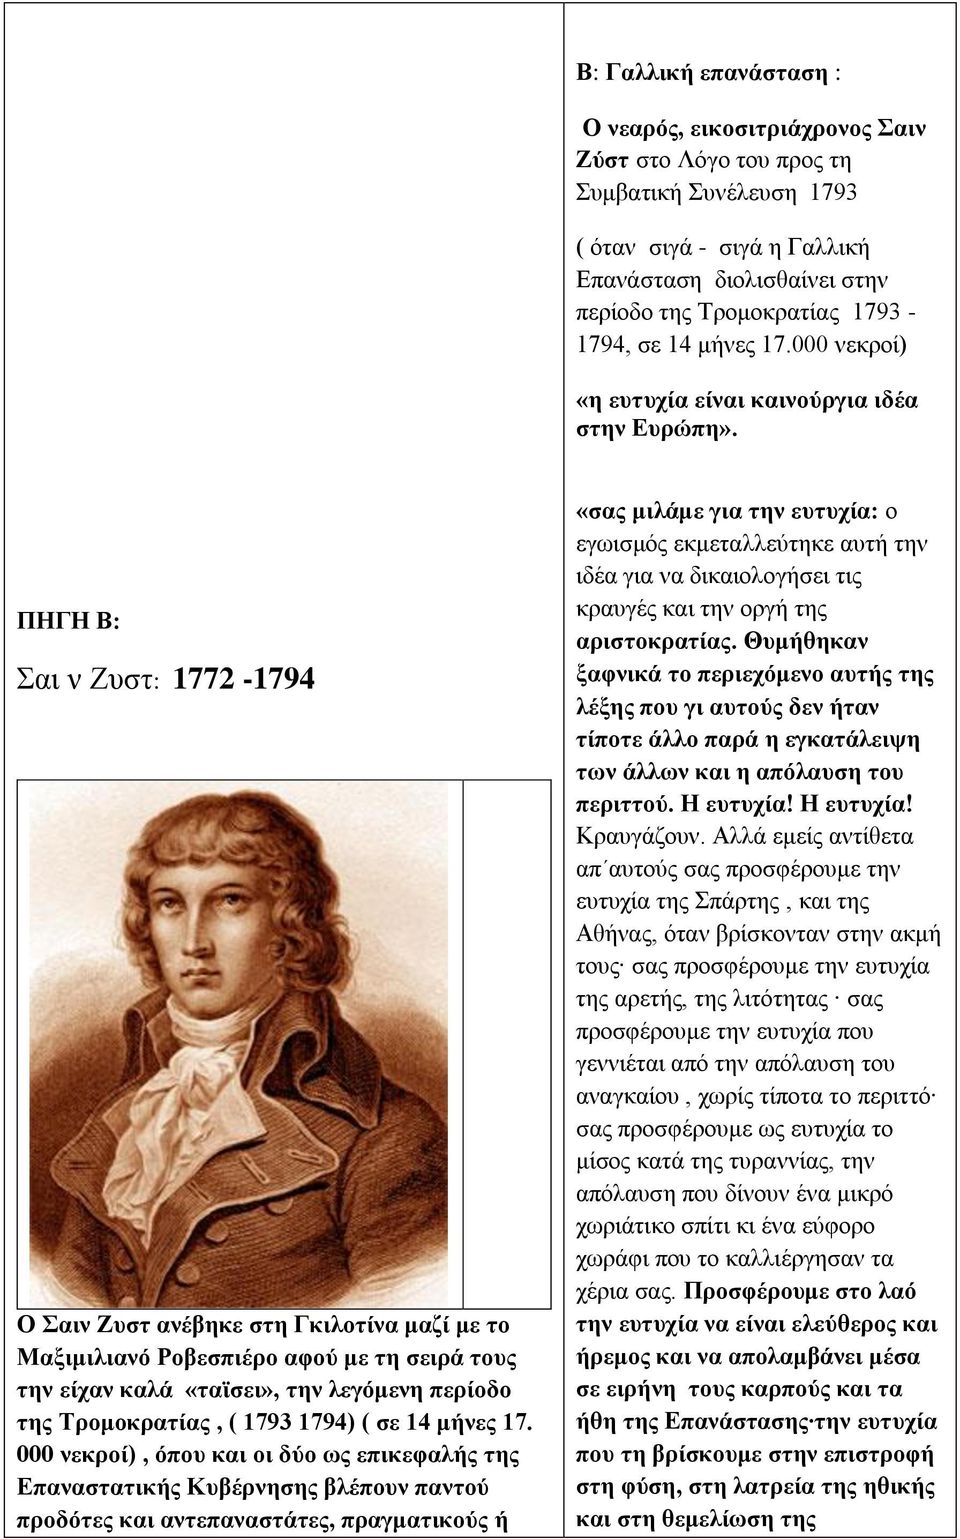 ΠΗΓΗ Β: Σαι ν Ζυστ: 1772-1794 Ο Σαιν Ζυστ ανέβηκε στη Γκιλοτίνα μαζί με το Μαξιμιλιανό Ροβεσπιέρο αφού με τη σειρά τους την είχαν καλά «ταϊσει», την λεγόμενη περίοδο της Τρομοκρατίας, ( 1793 1794) (